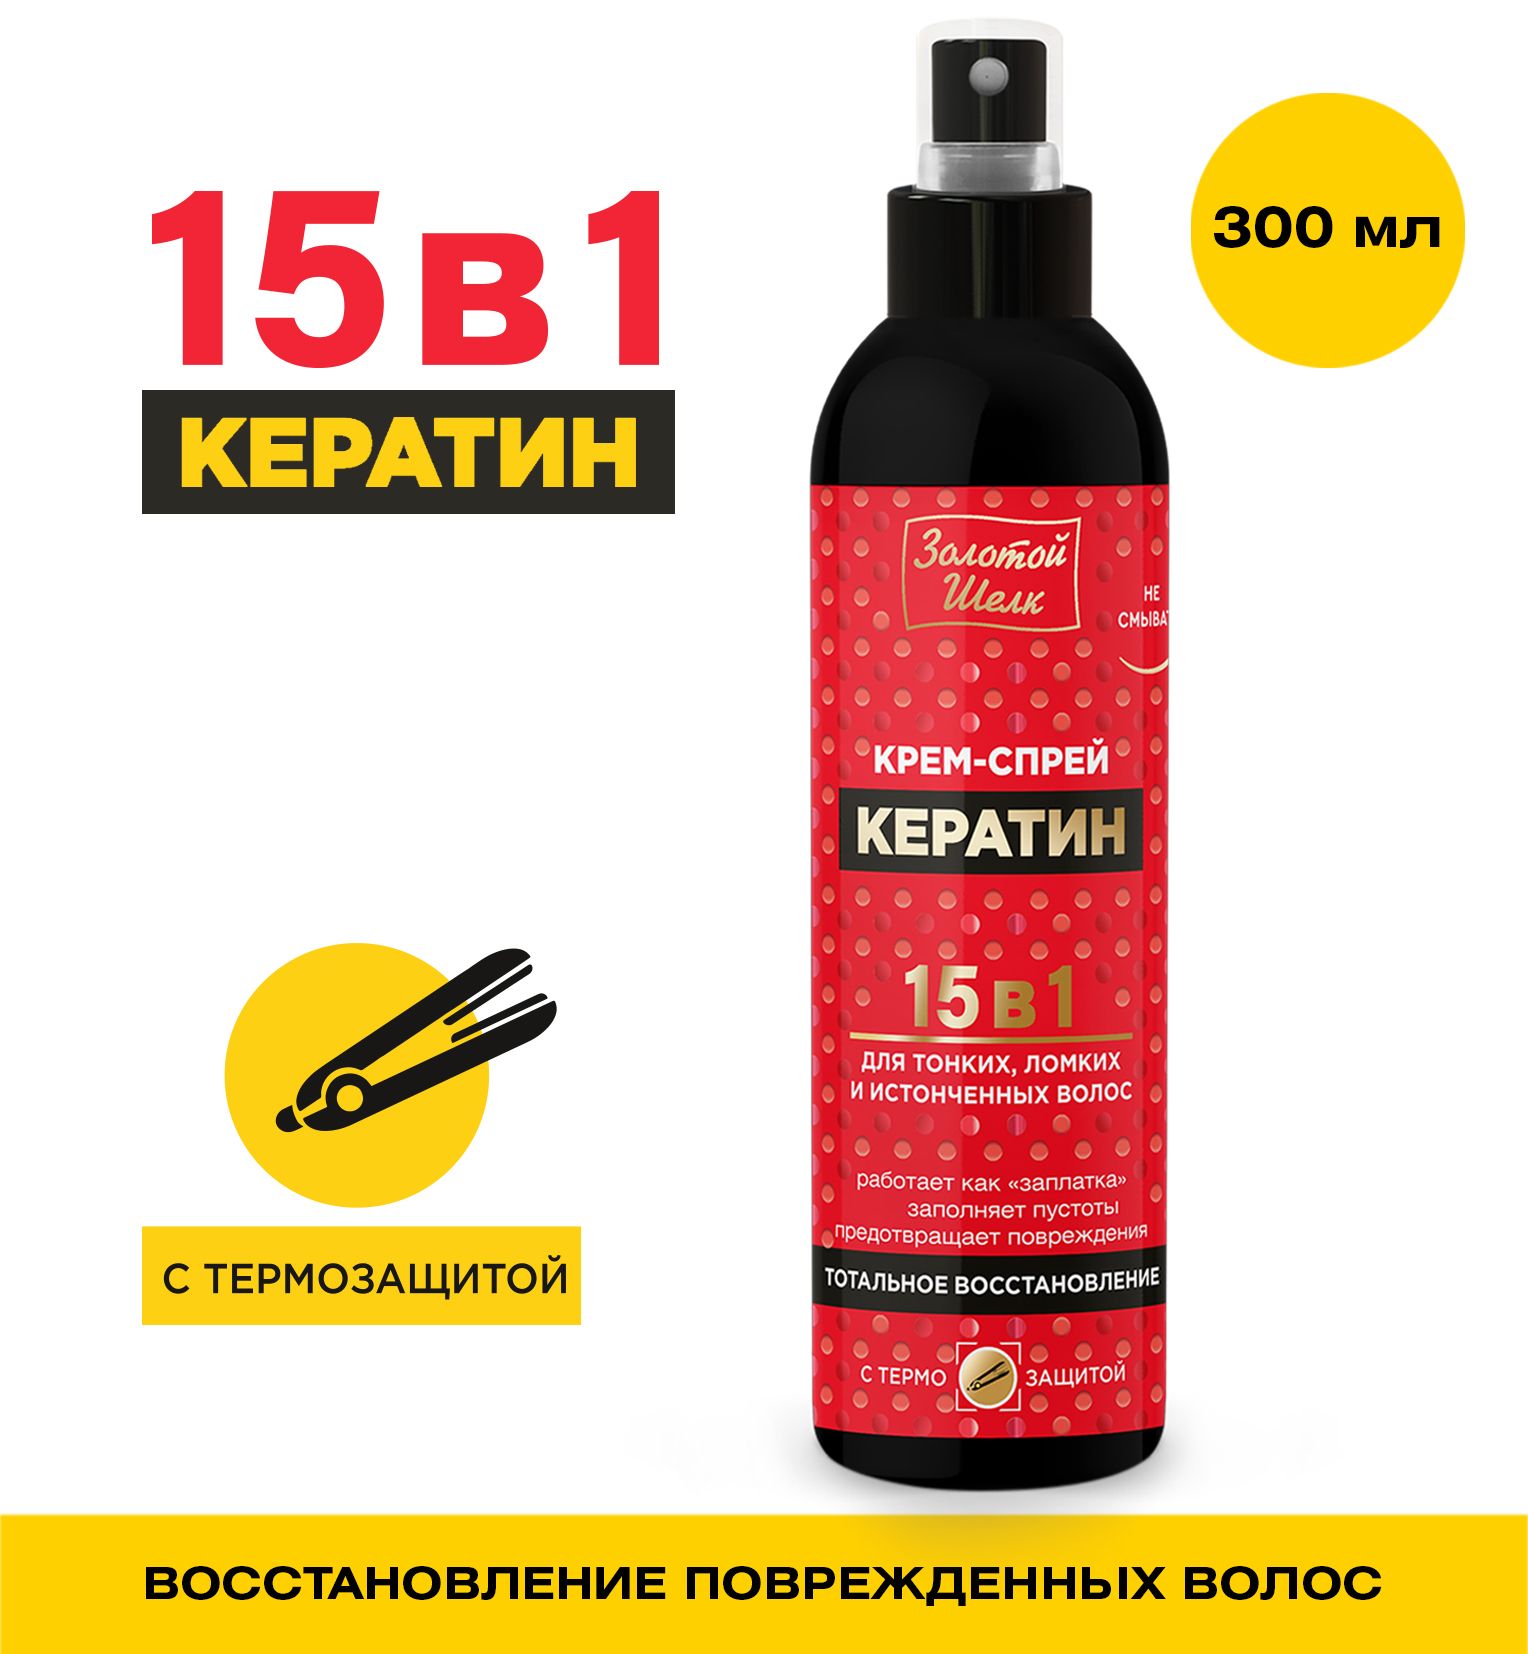 ЗолотойшелкКрем-спрей15в1КЕРАТИН300мл.